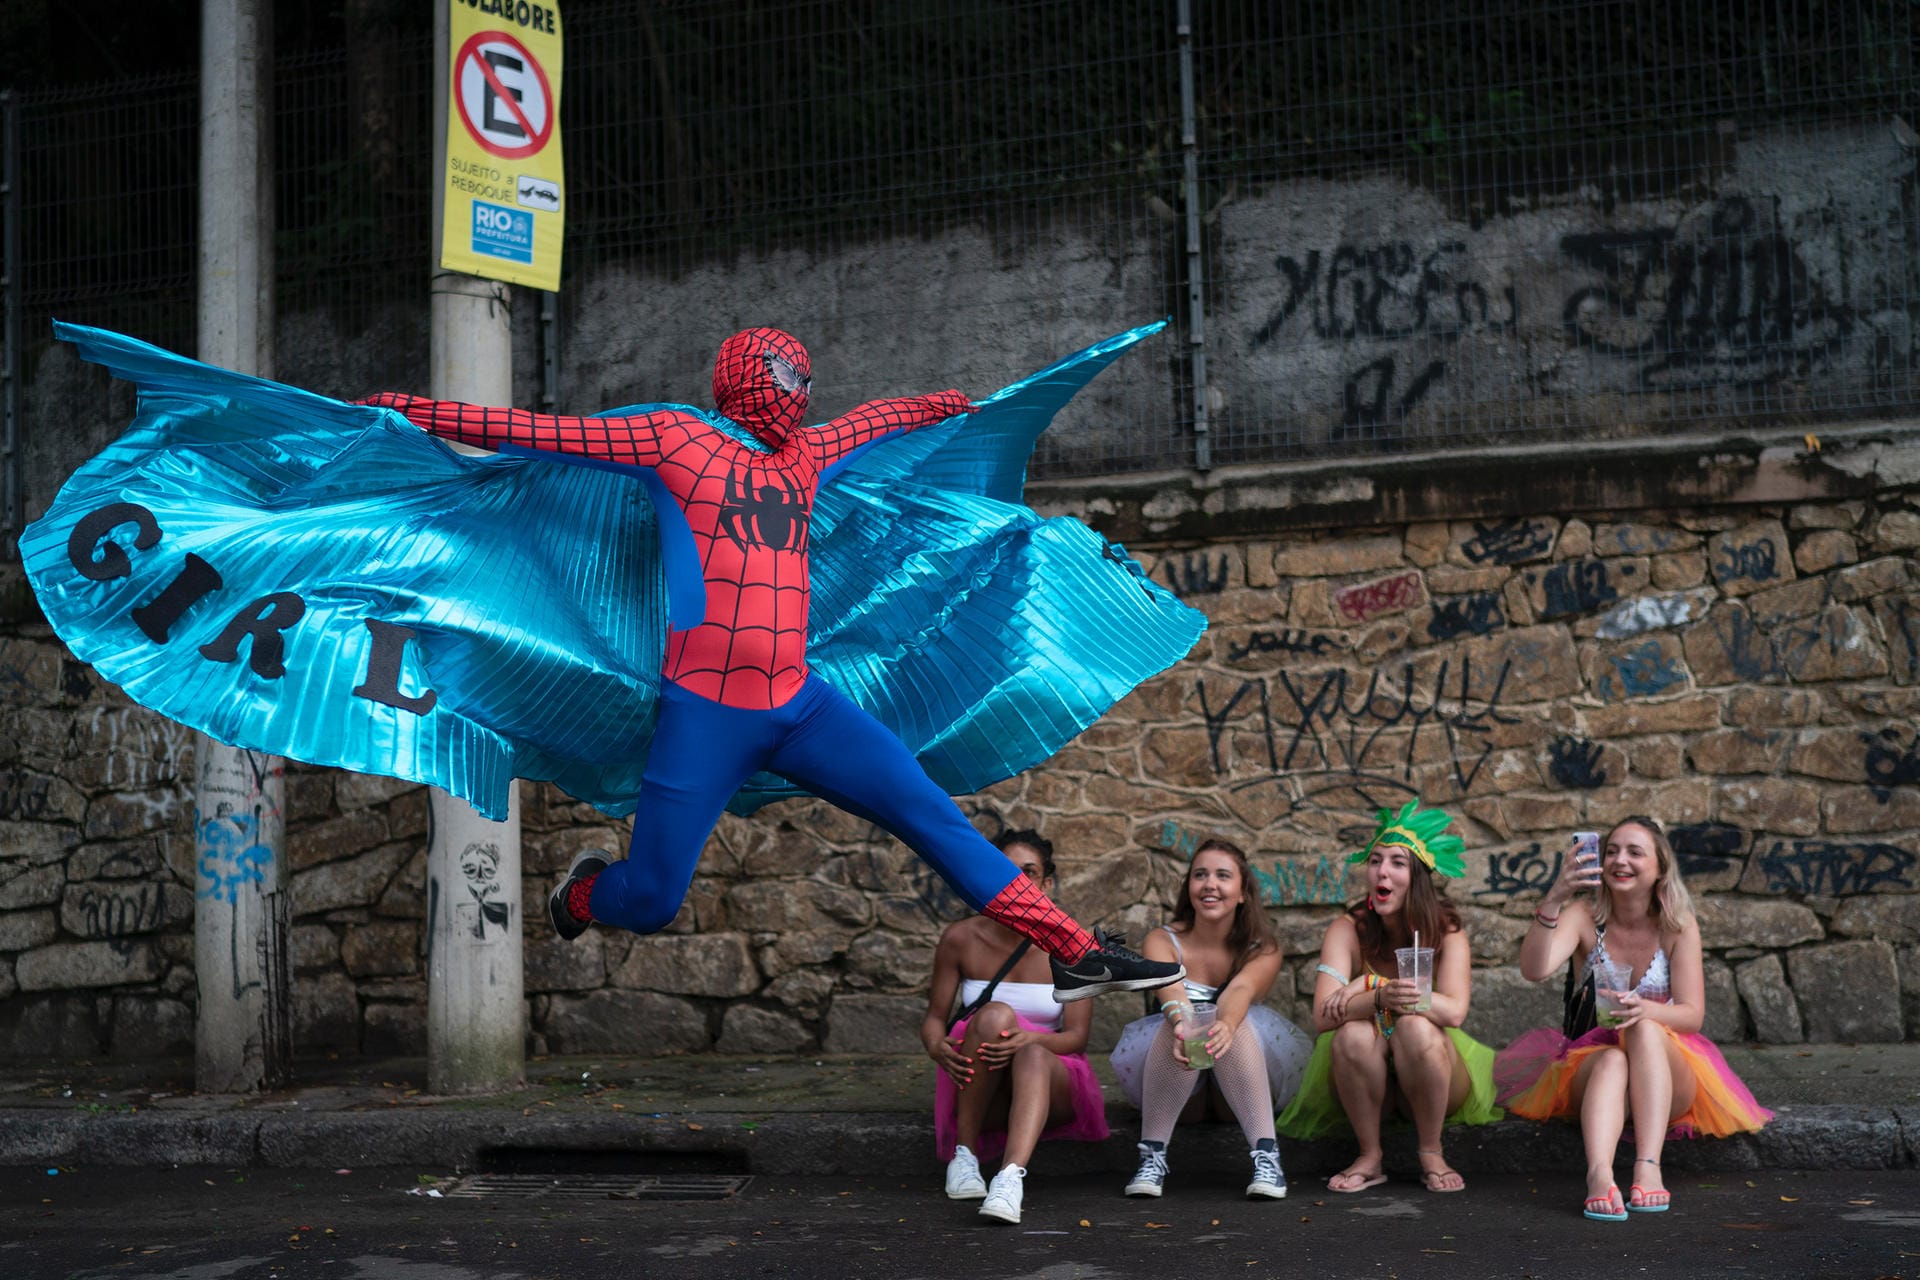 Auch abseits der großen Umzüge wird gefeiert: Ein als Spiderman kostümierter Karnevalsteilnehmer führt vor jungen Frauen einen Sprung auf.